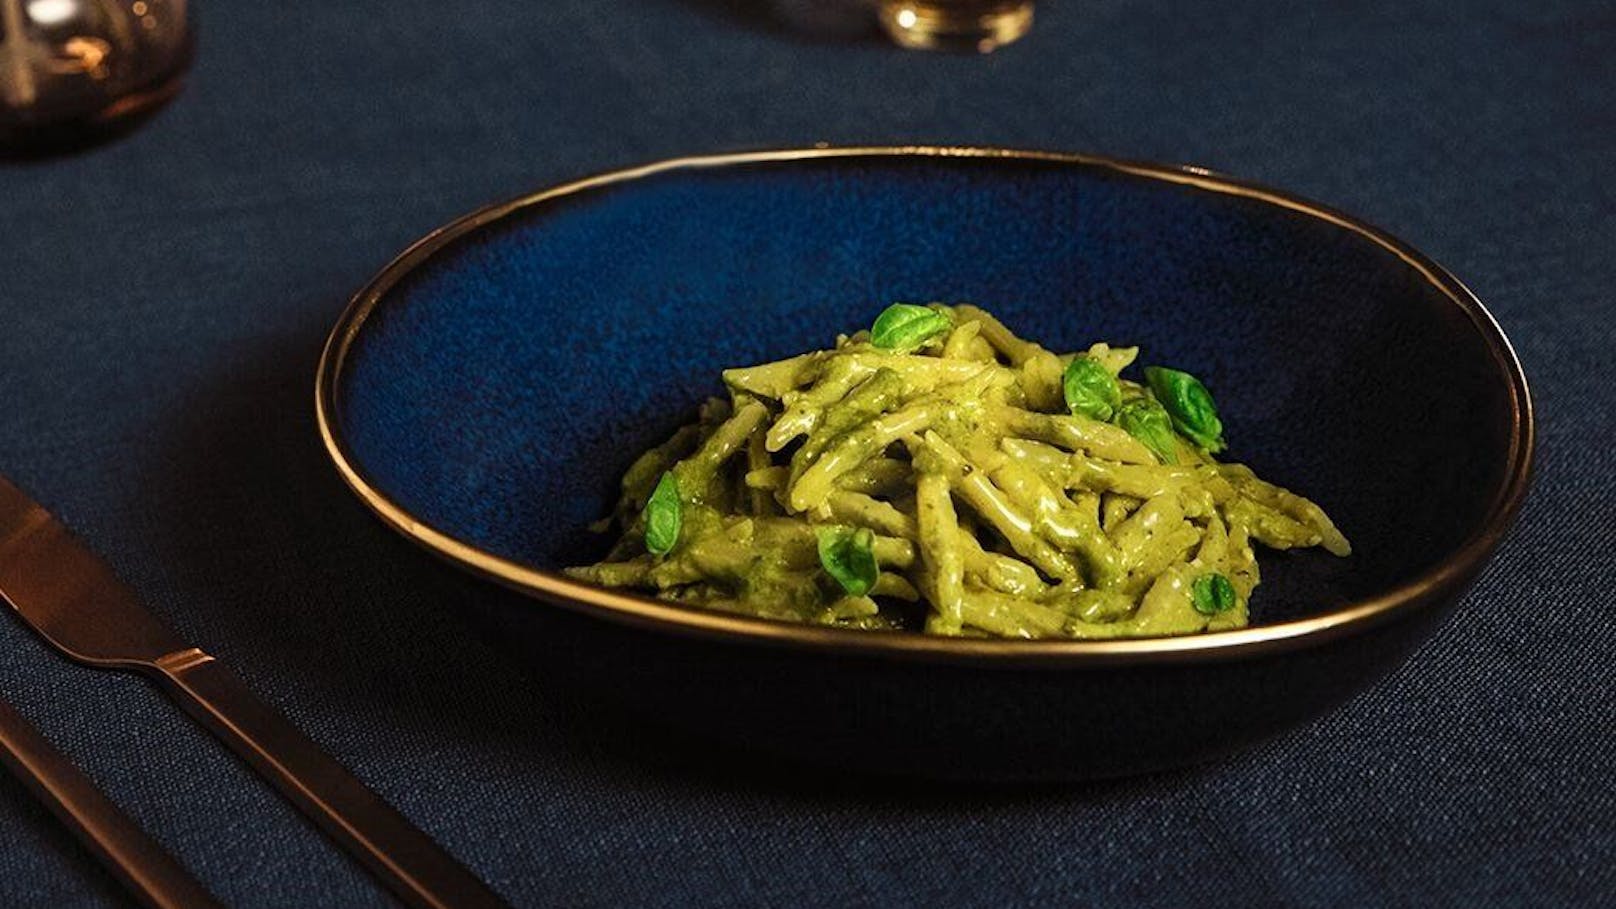 Pesto und Pasta: Eine Kombi, die so einfach wie köstlich ist und bei vielen oft als schnelles Essen am Tisch steht.